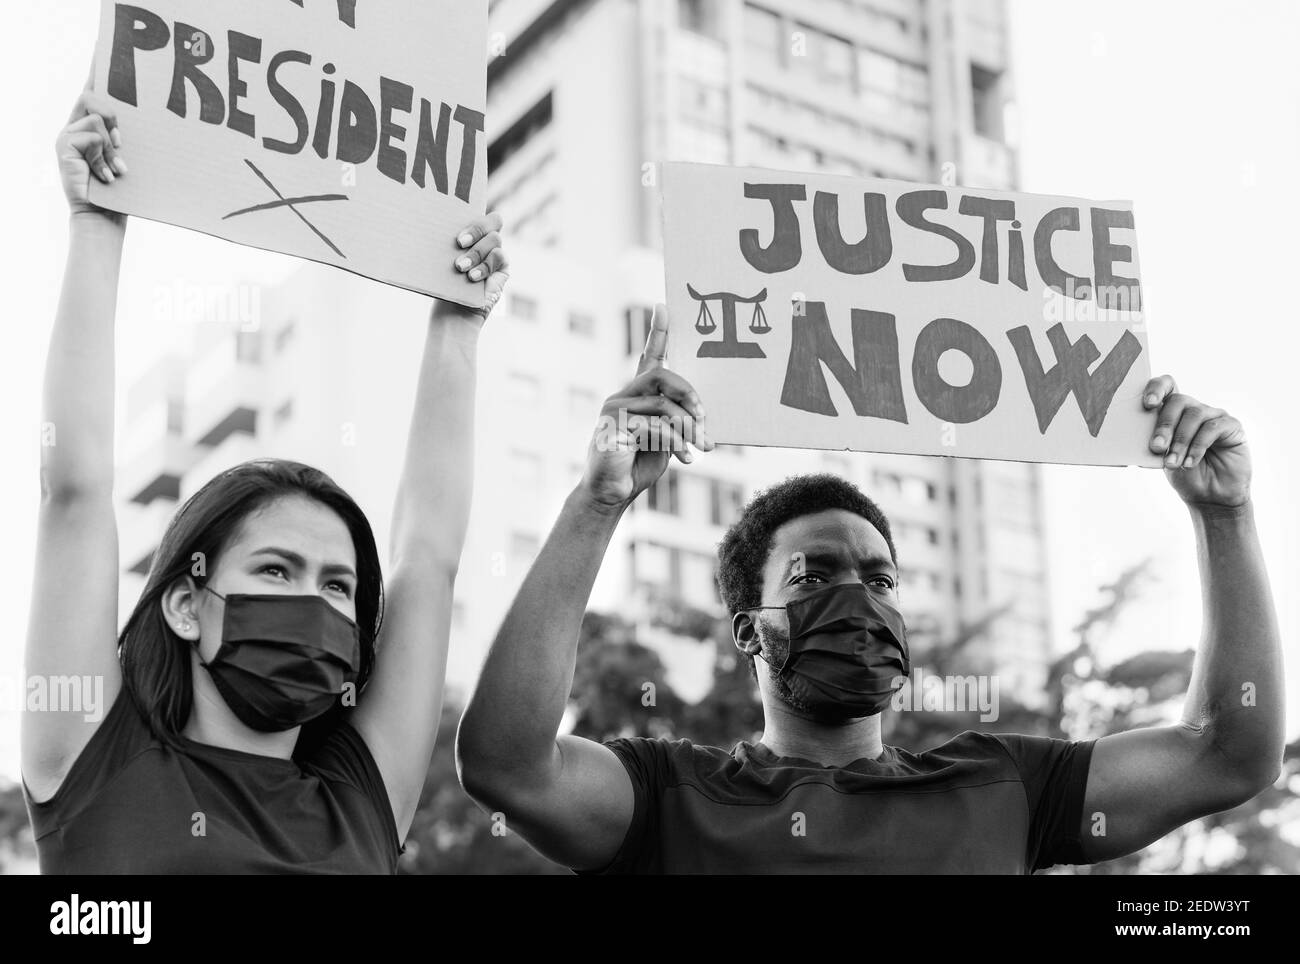 Aktivistische soziale Bewegung, die gegen Rassismus protestiert und für Gerechtigkeit kämpft Und Gleichheit - Menschenrechts- und Bürgerrechtskonzept Stockfoto